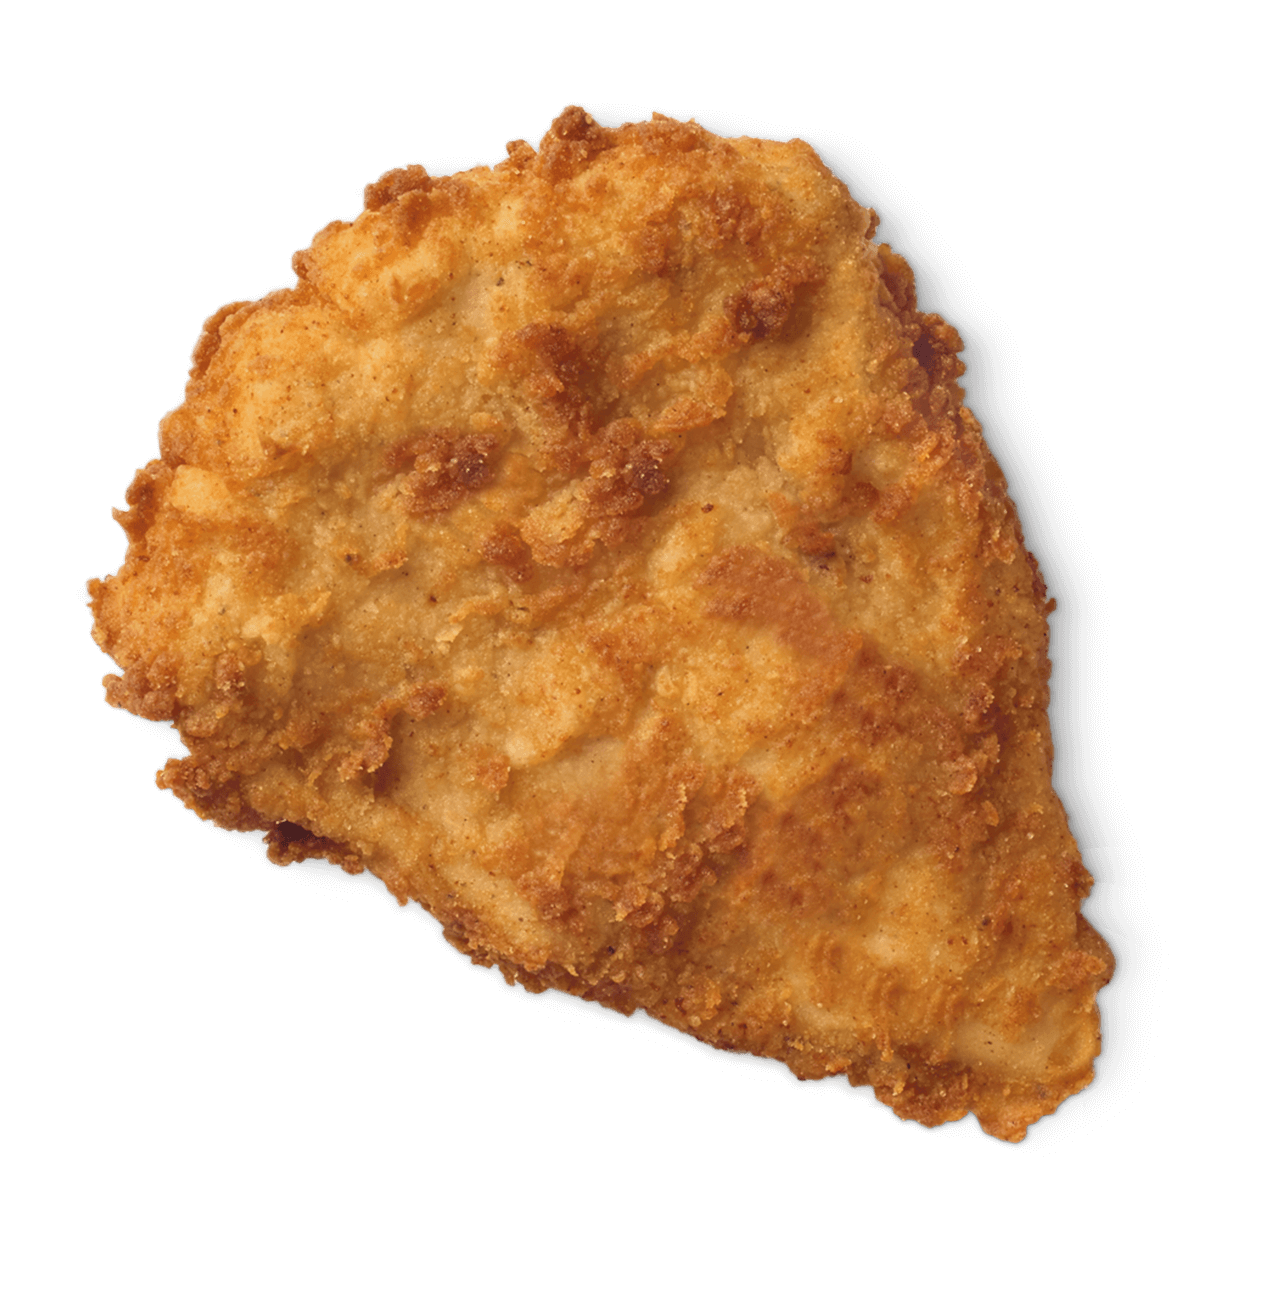 Imagen Transparente PNG de pollo frito